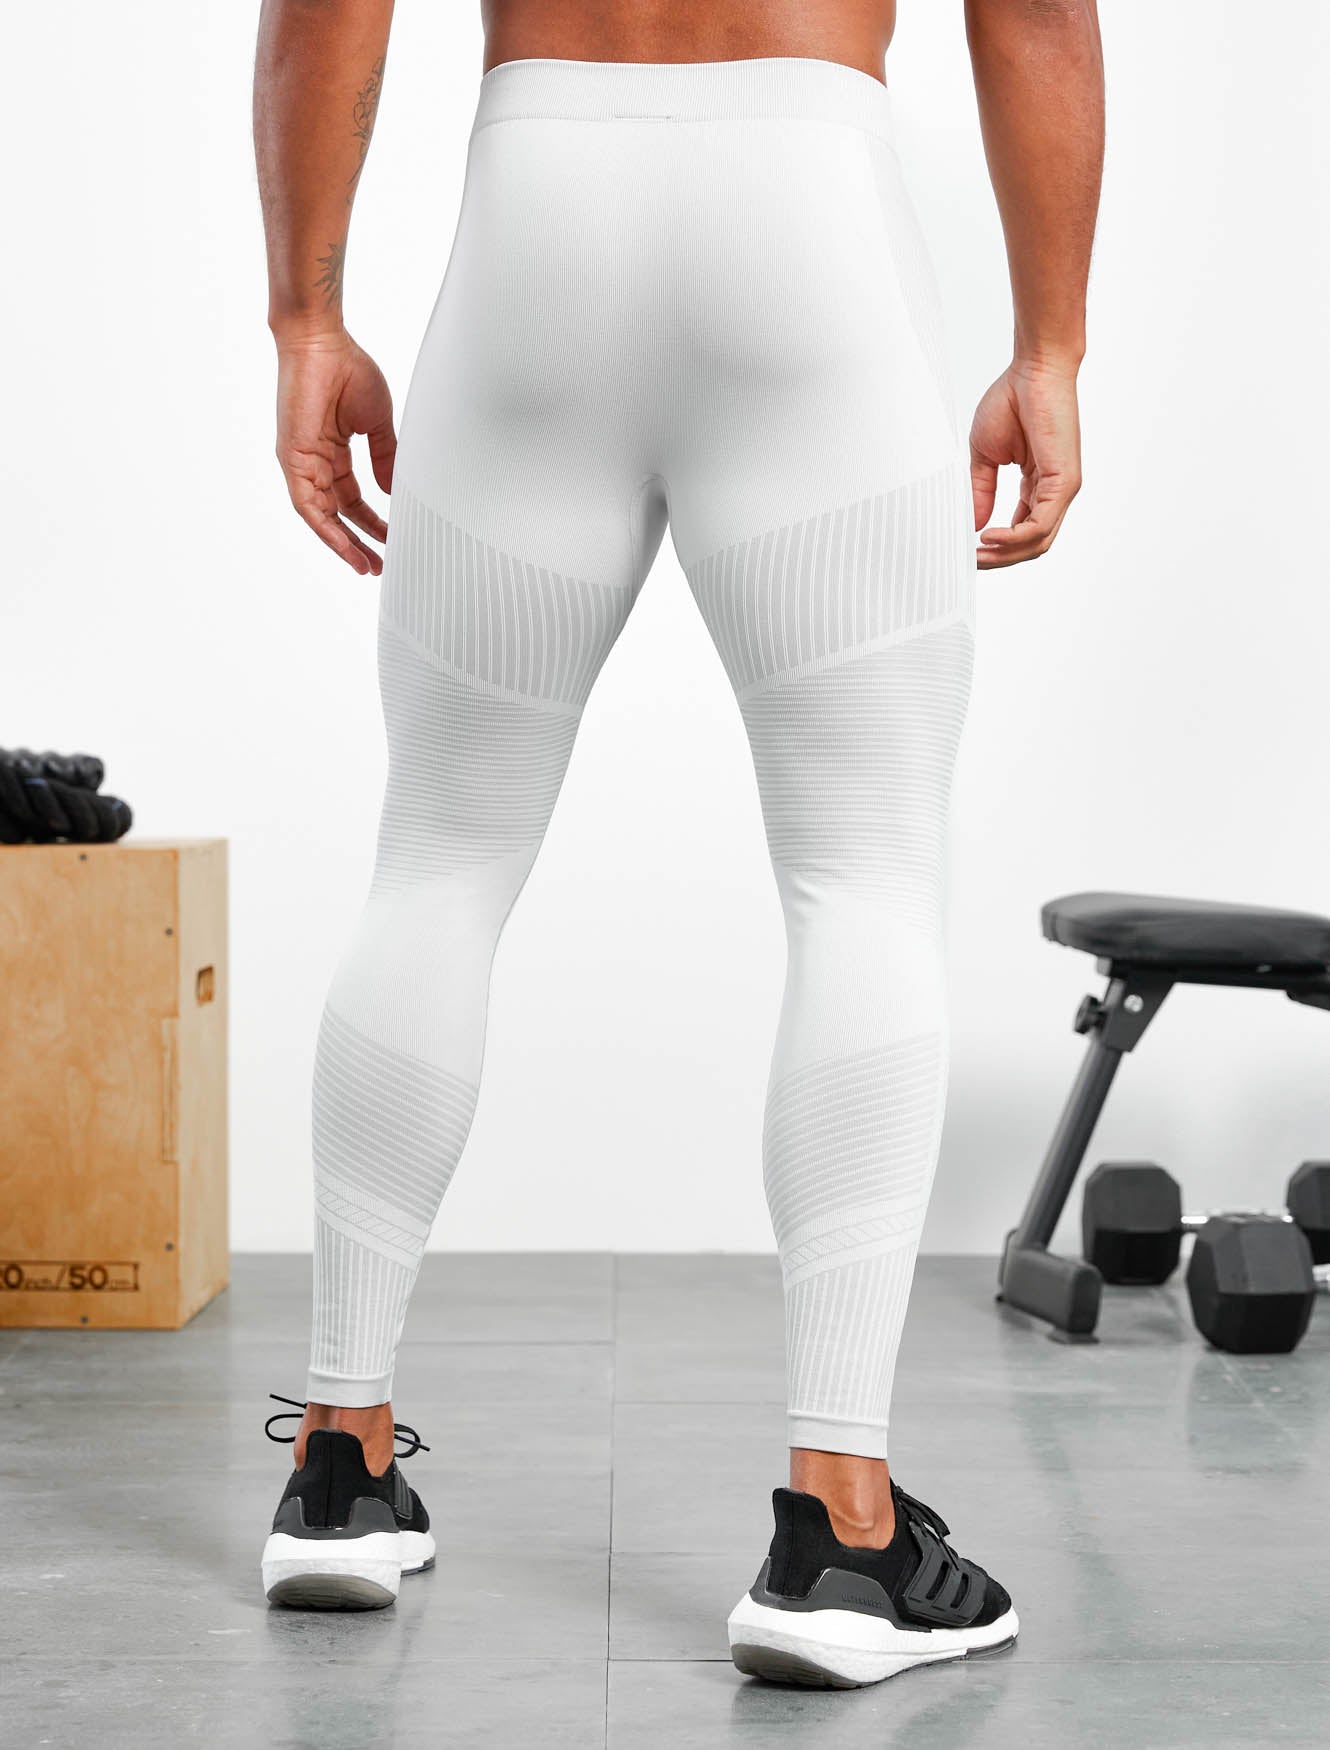 Xeno Seamless Leggings / White.Grey Pursue Fitness 3